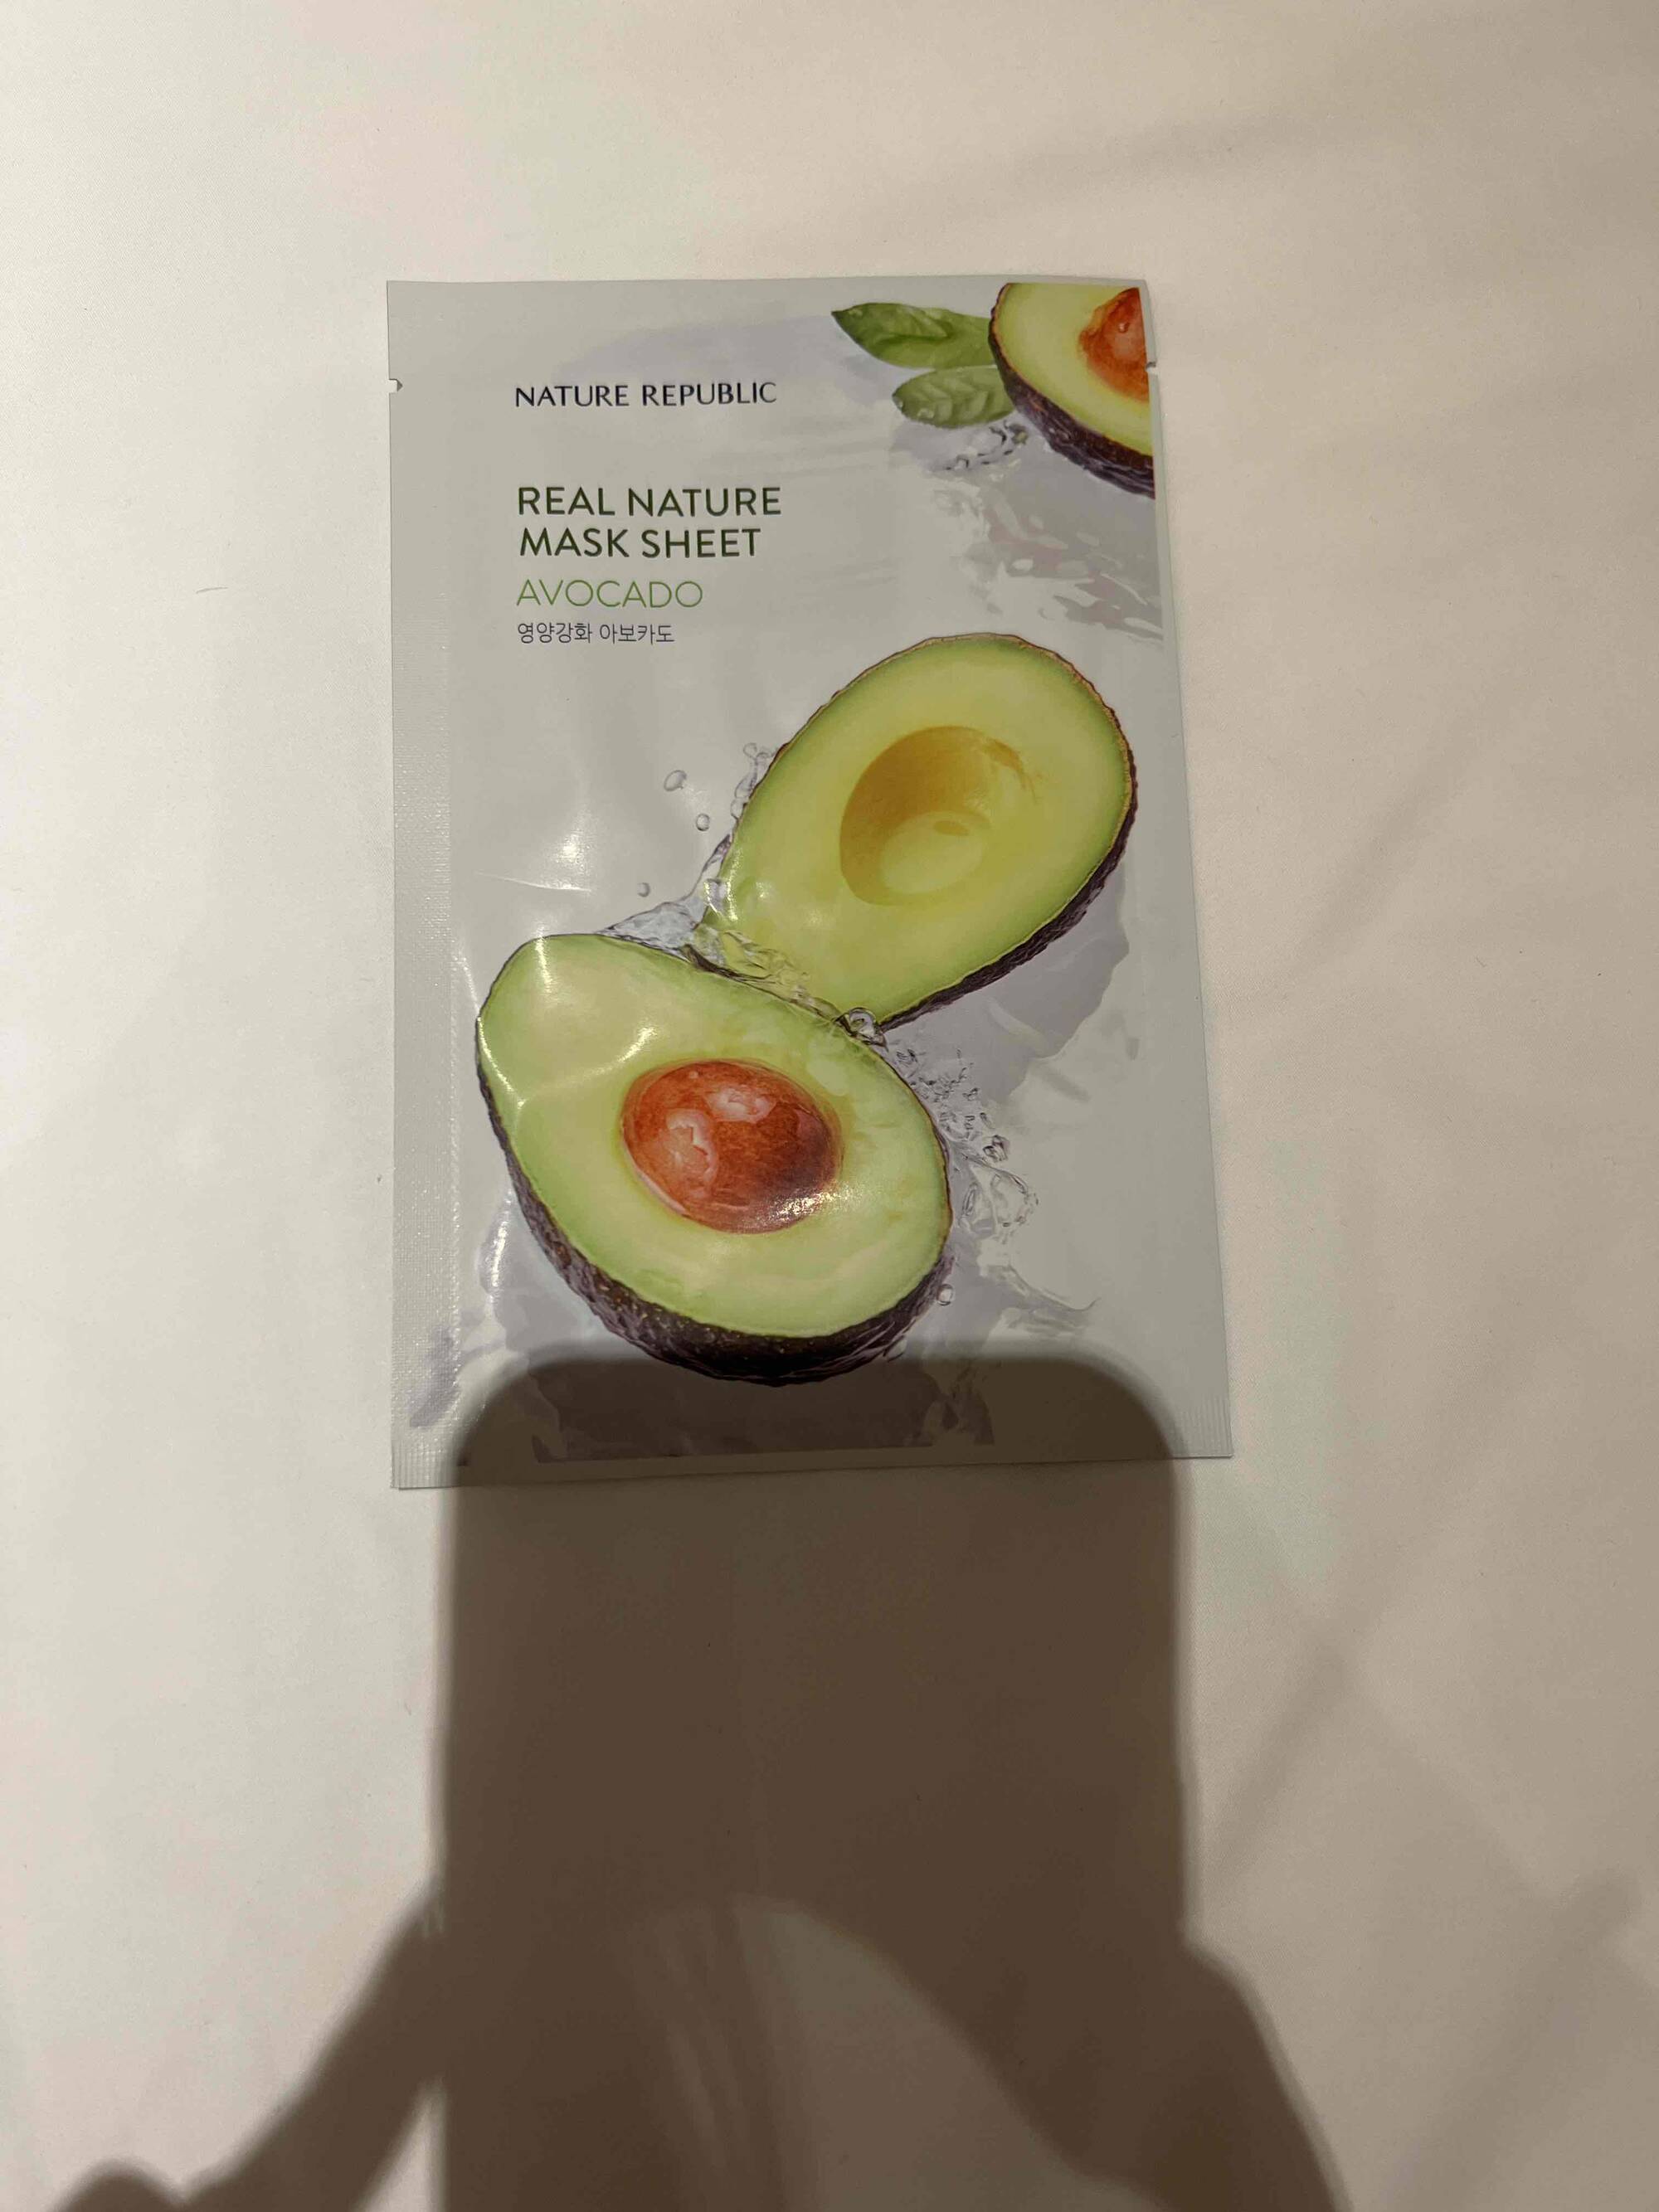 NATURE REPUBLIC - Real nature mask sheet avocado